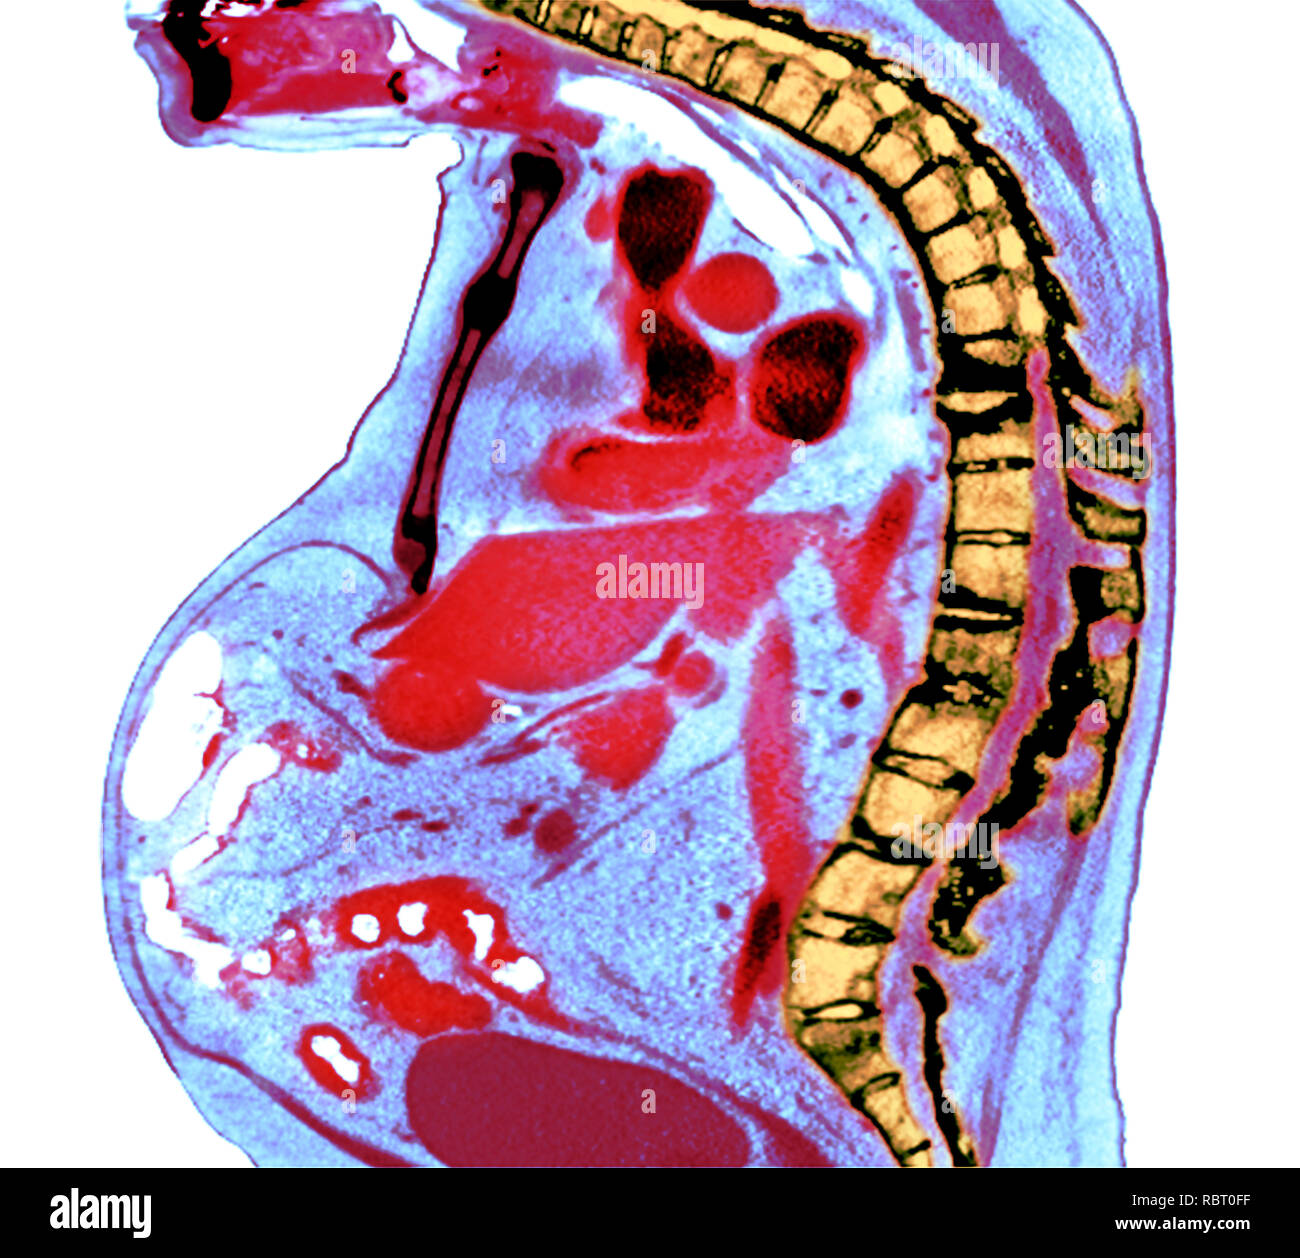 Spina dorsale nella spondilite anchilosante. Colorato X-ray di una sezione attraverso la colonna vertebrale toracica di un 74-anno-vecchio paziente di sesso maschile con spondilite anchilosante, sho Foto Stock